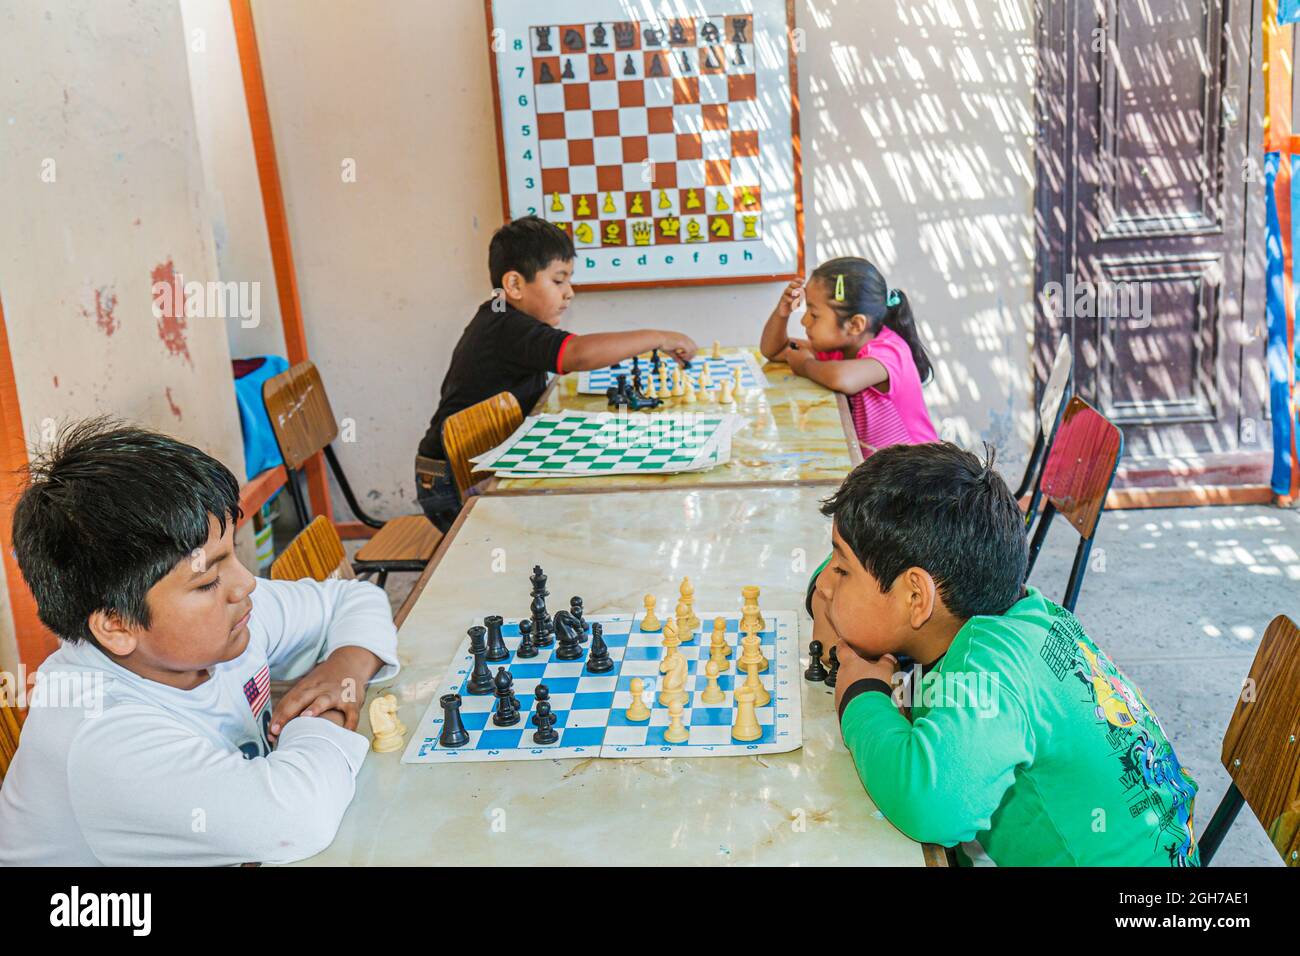 Tacna Peru,campo di scacchi Avenida Modesto Basadre gameboard,ragazzi ispanici ragazza maschio femmina bambini ragazzi studenti che giocano a studiare Foto Stock